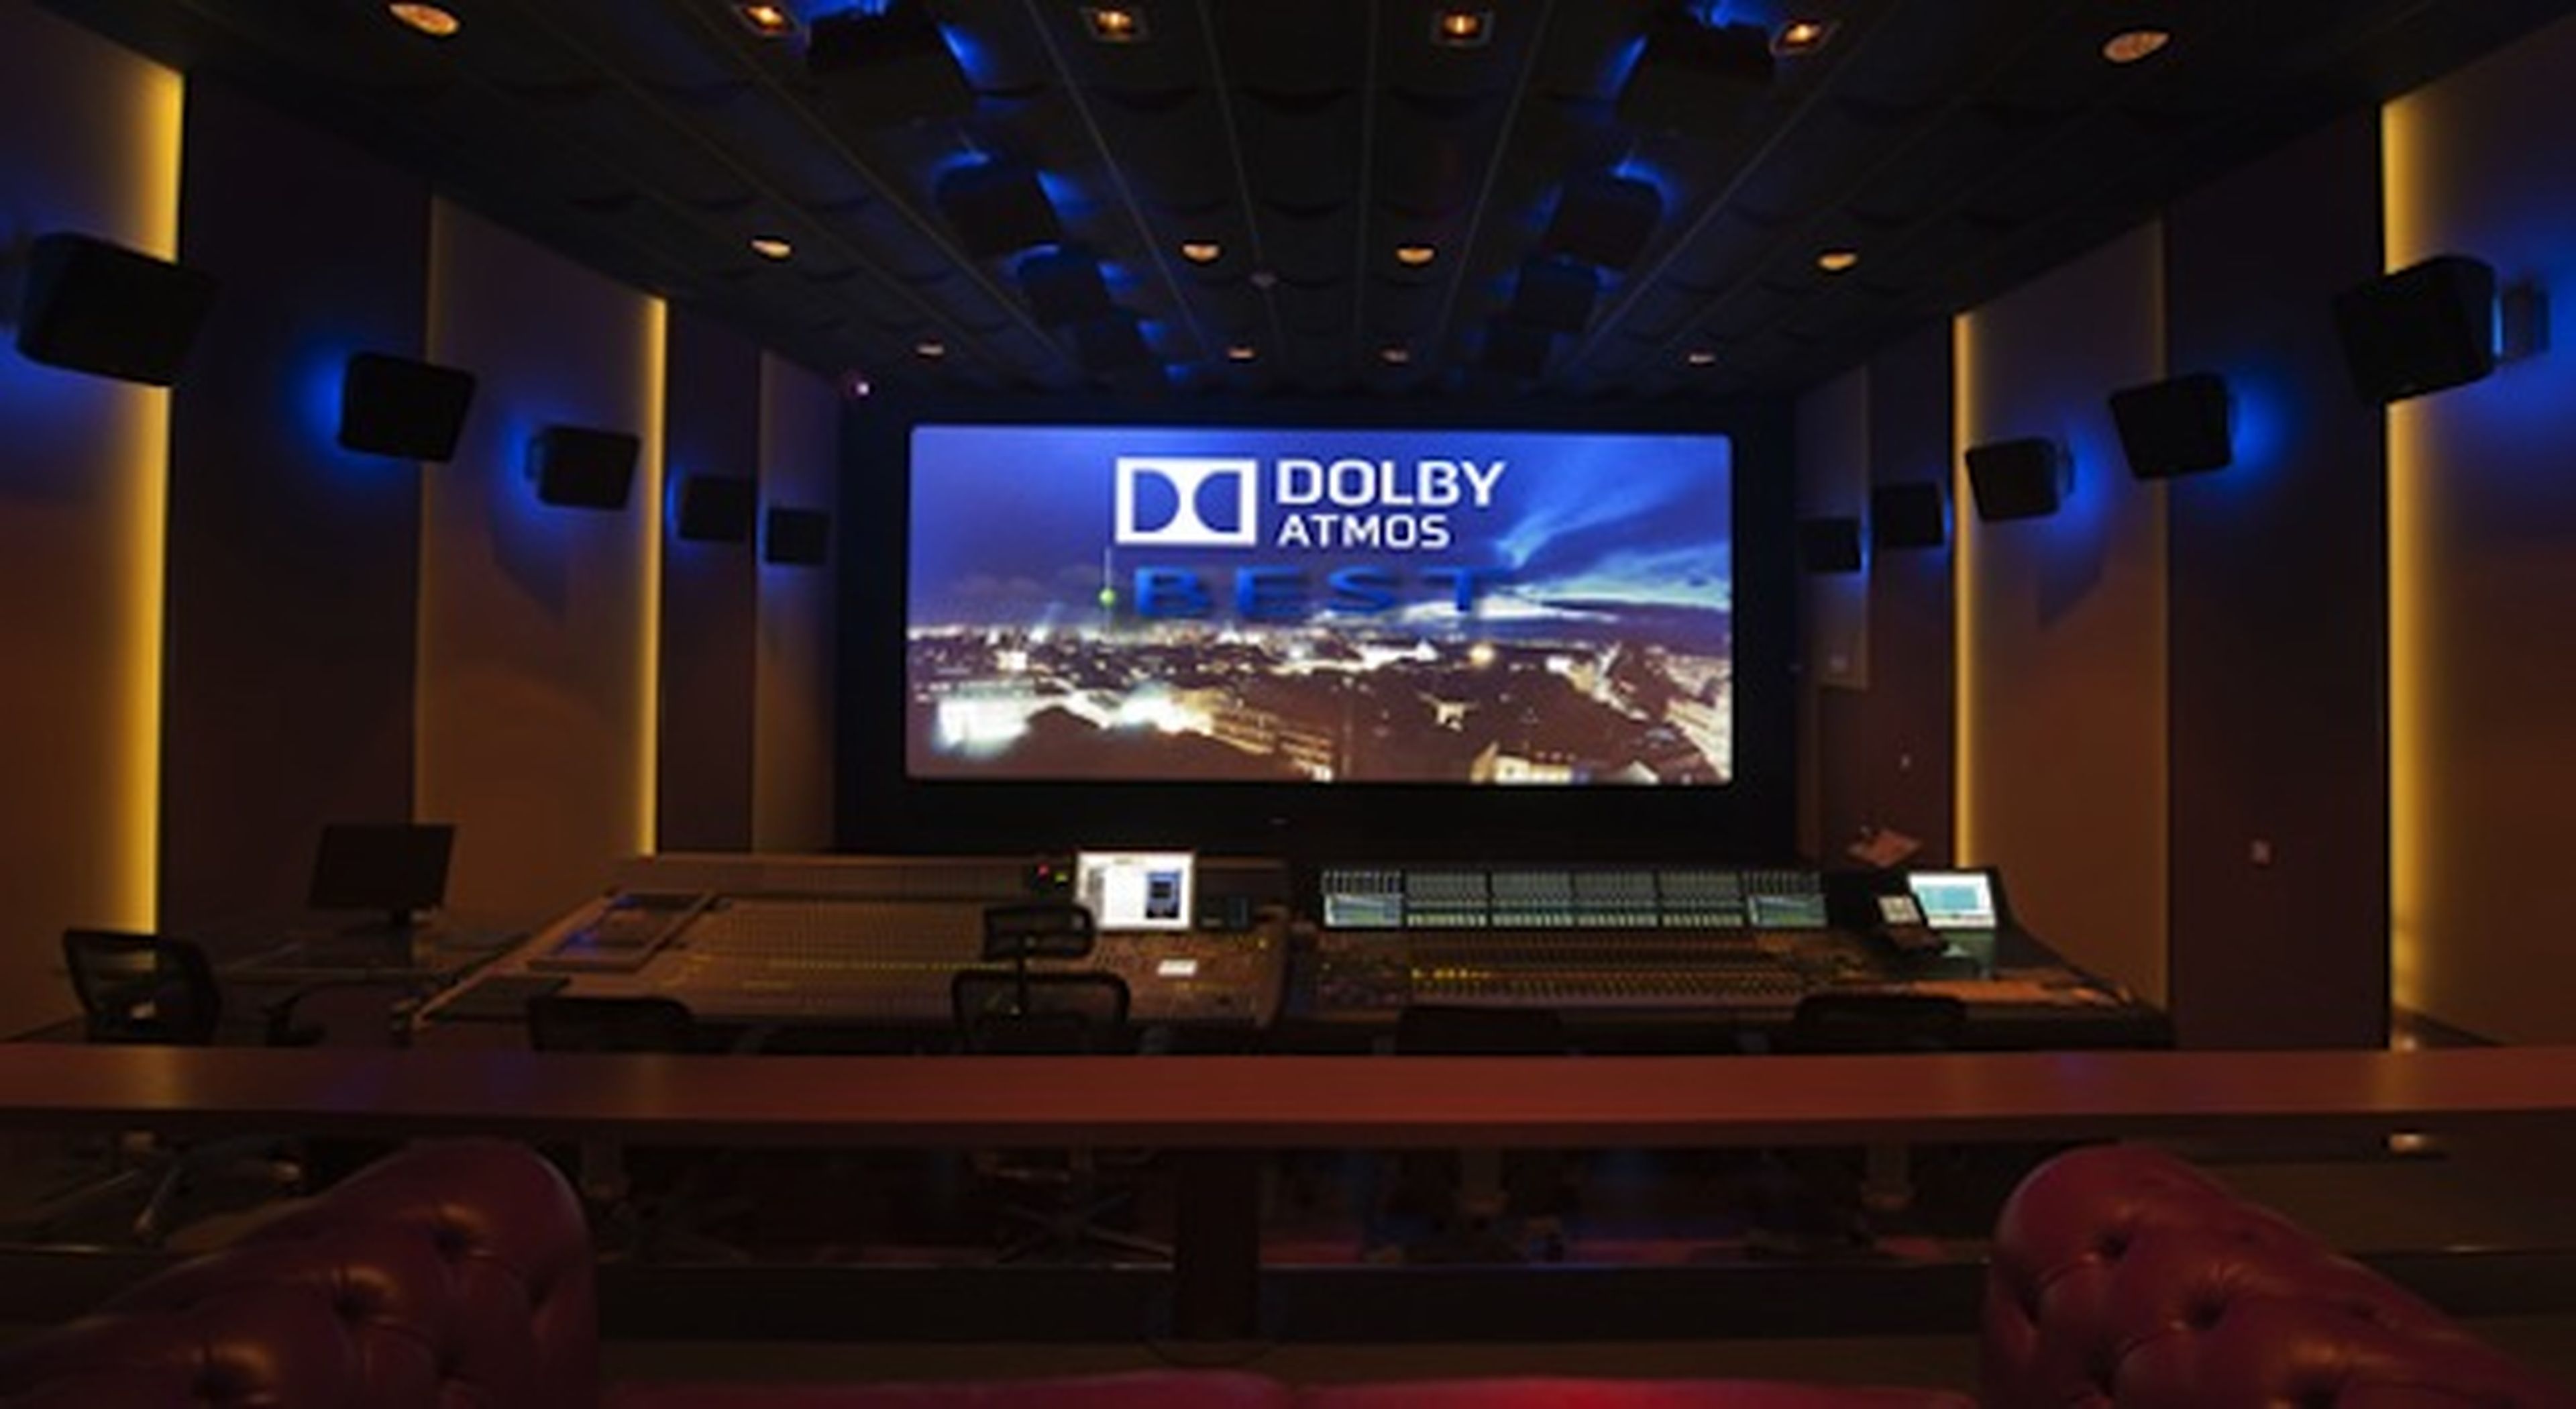 Sonido envolvente Dolby Atmos, ¿qué es y cómo funciona?